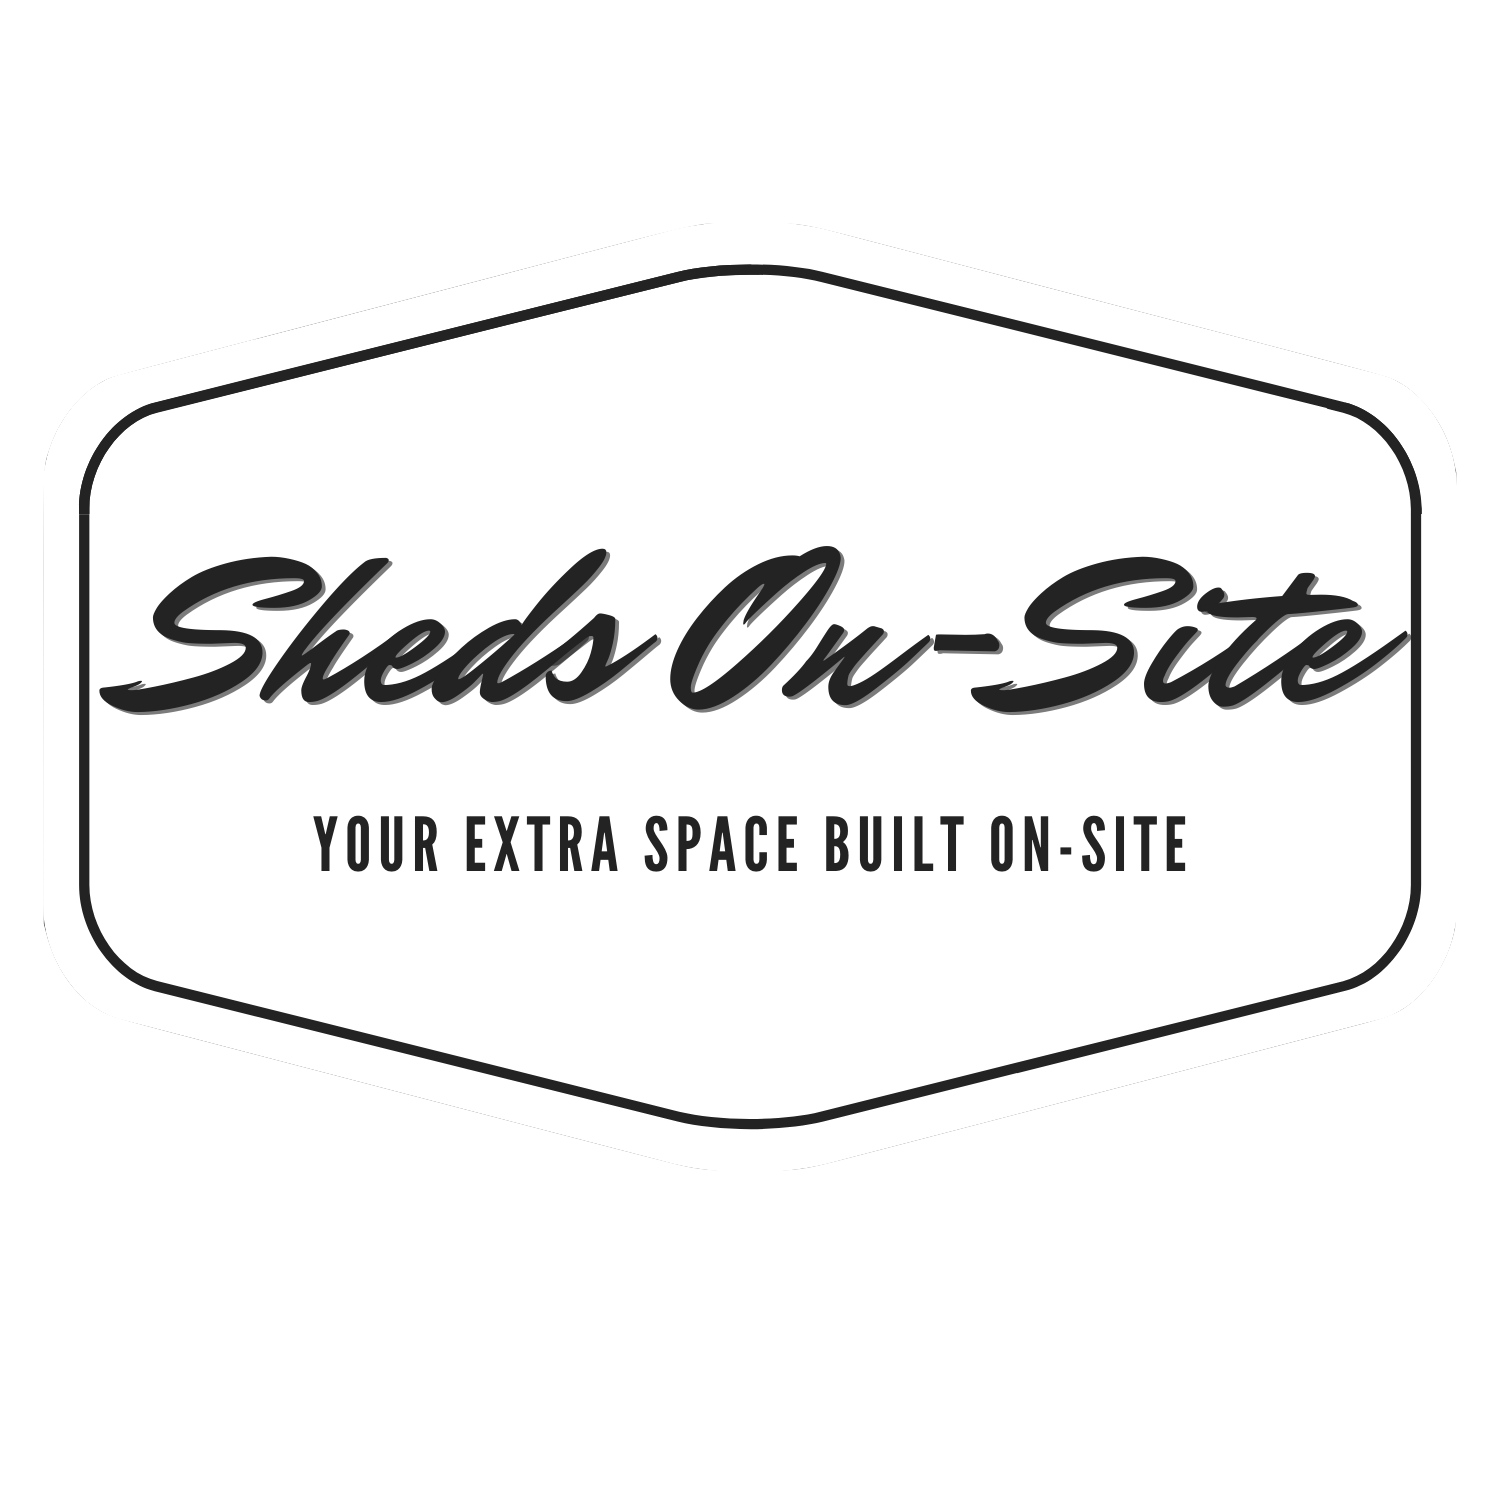 SHEDS ON-SITE LLC